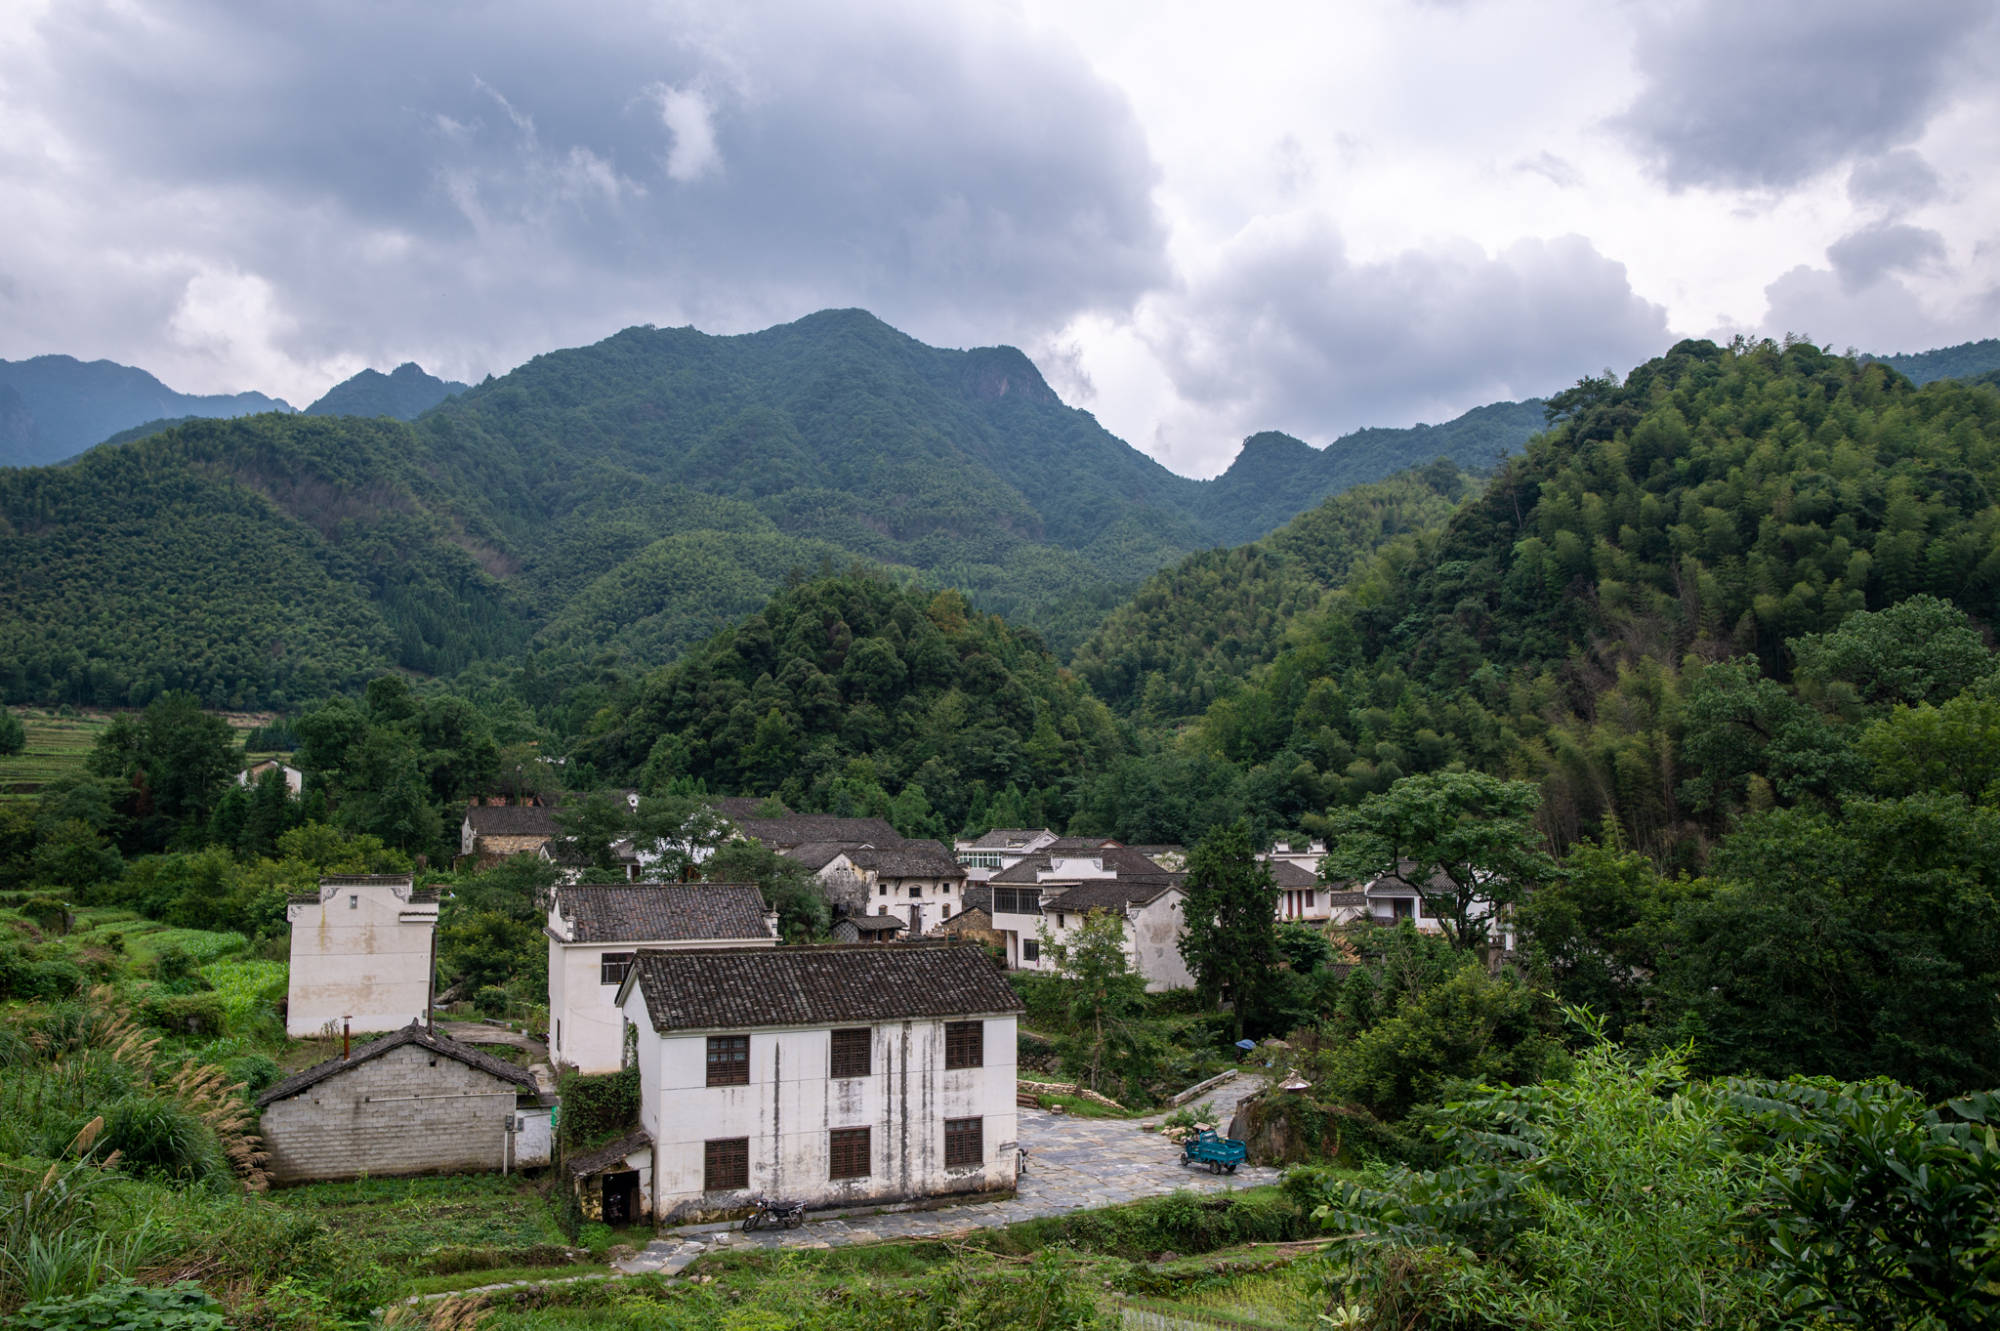 藏在皖南群山间的古村落,比宏村更原生态,景色美如世外桃源